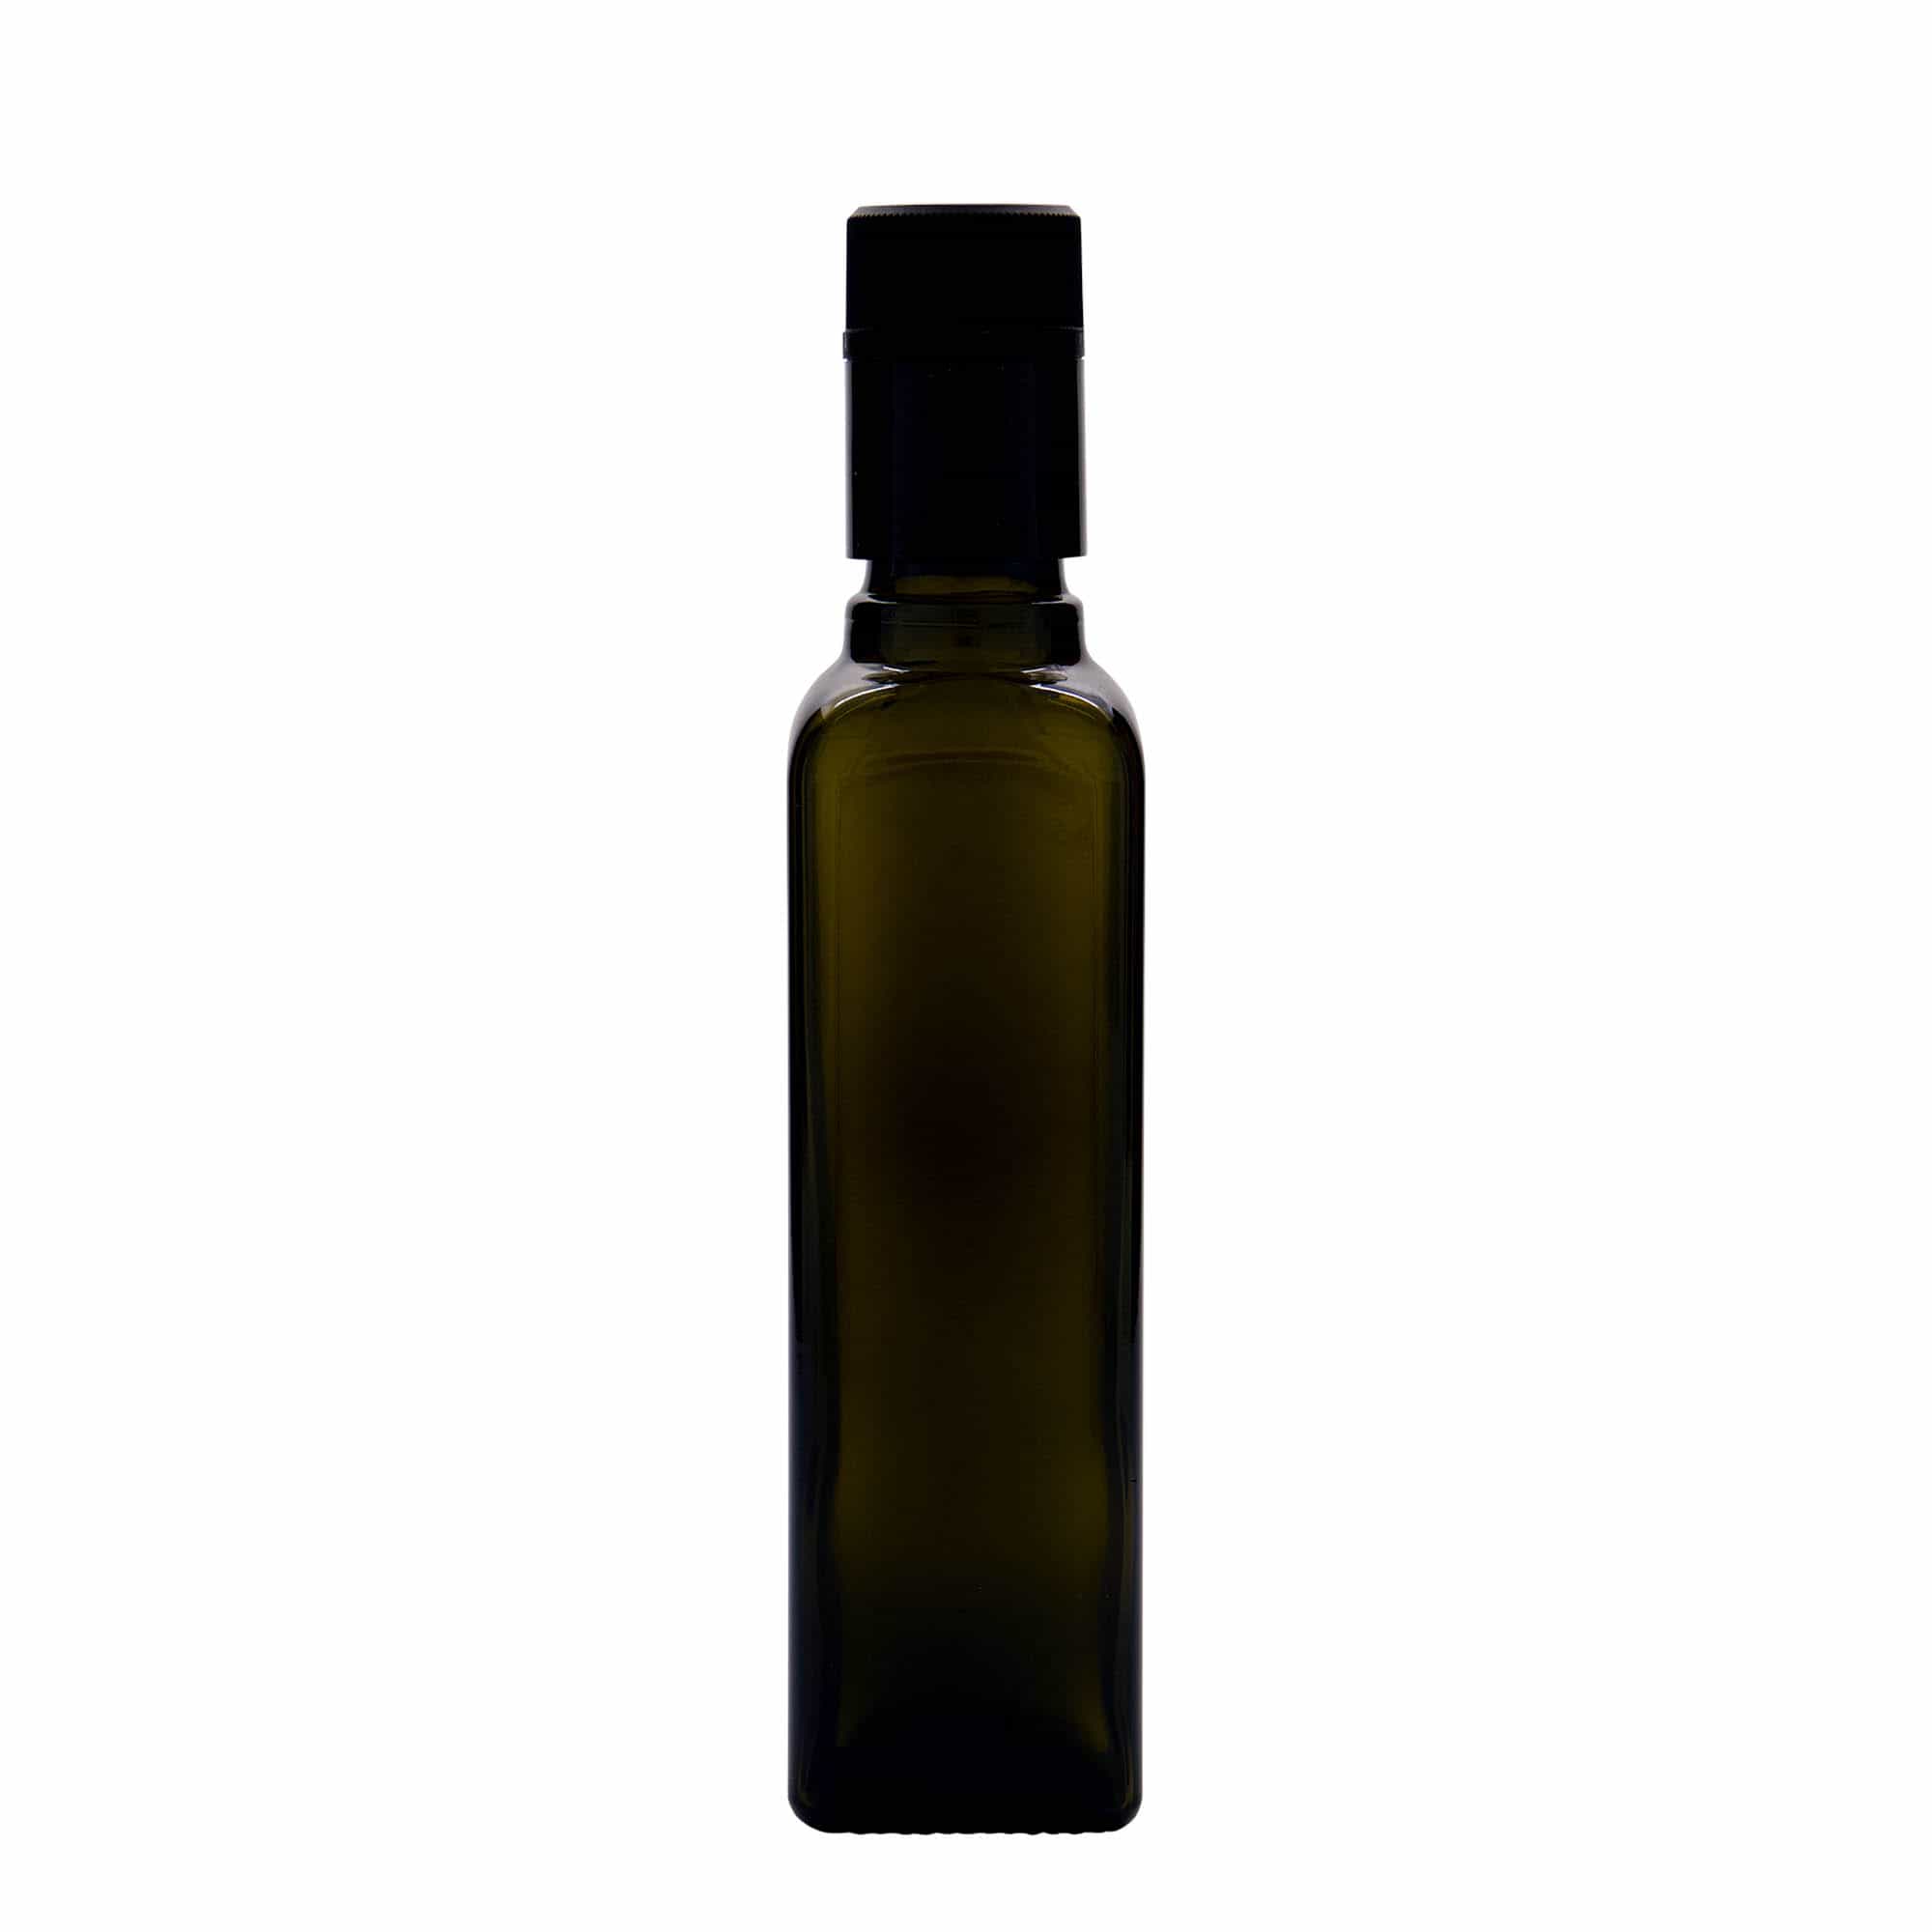 Lahev na ocet/olej 250 ml 'Quadra', sklo, čtvercová, starožitná zelená, ústí: DOP